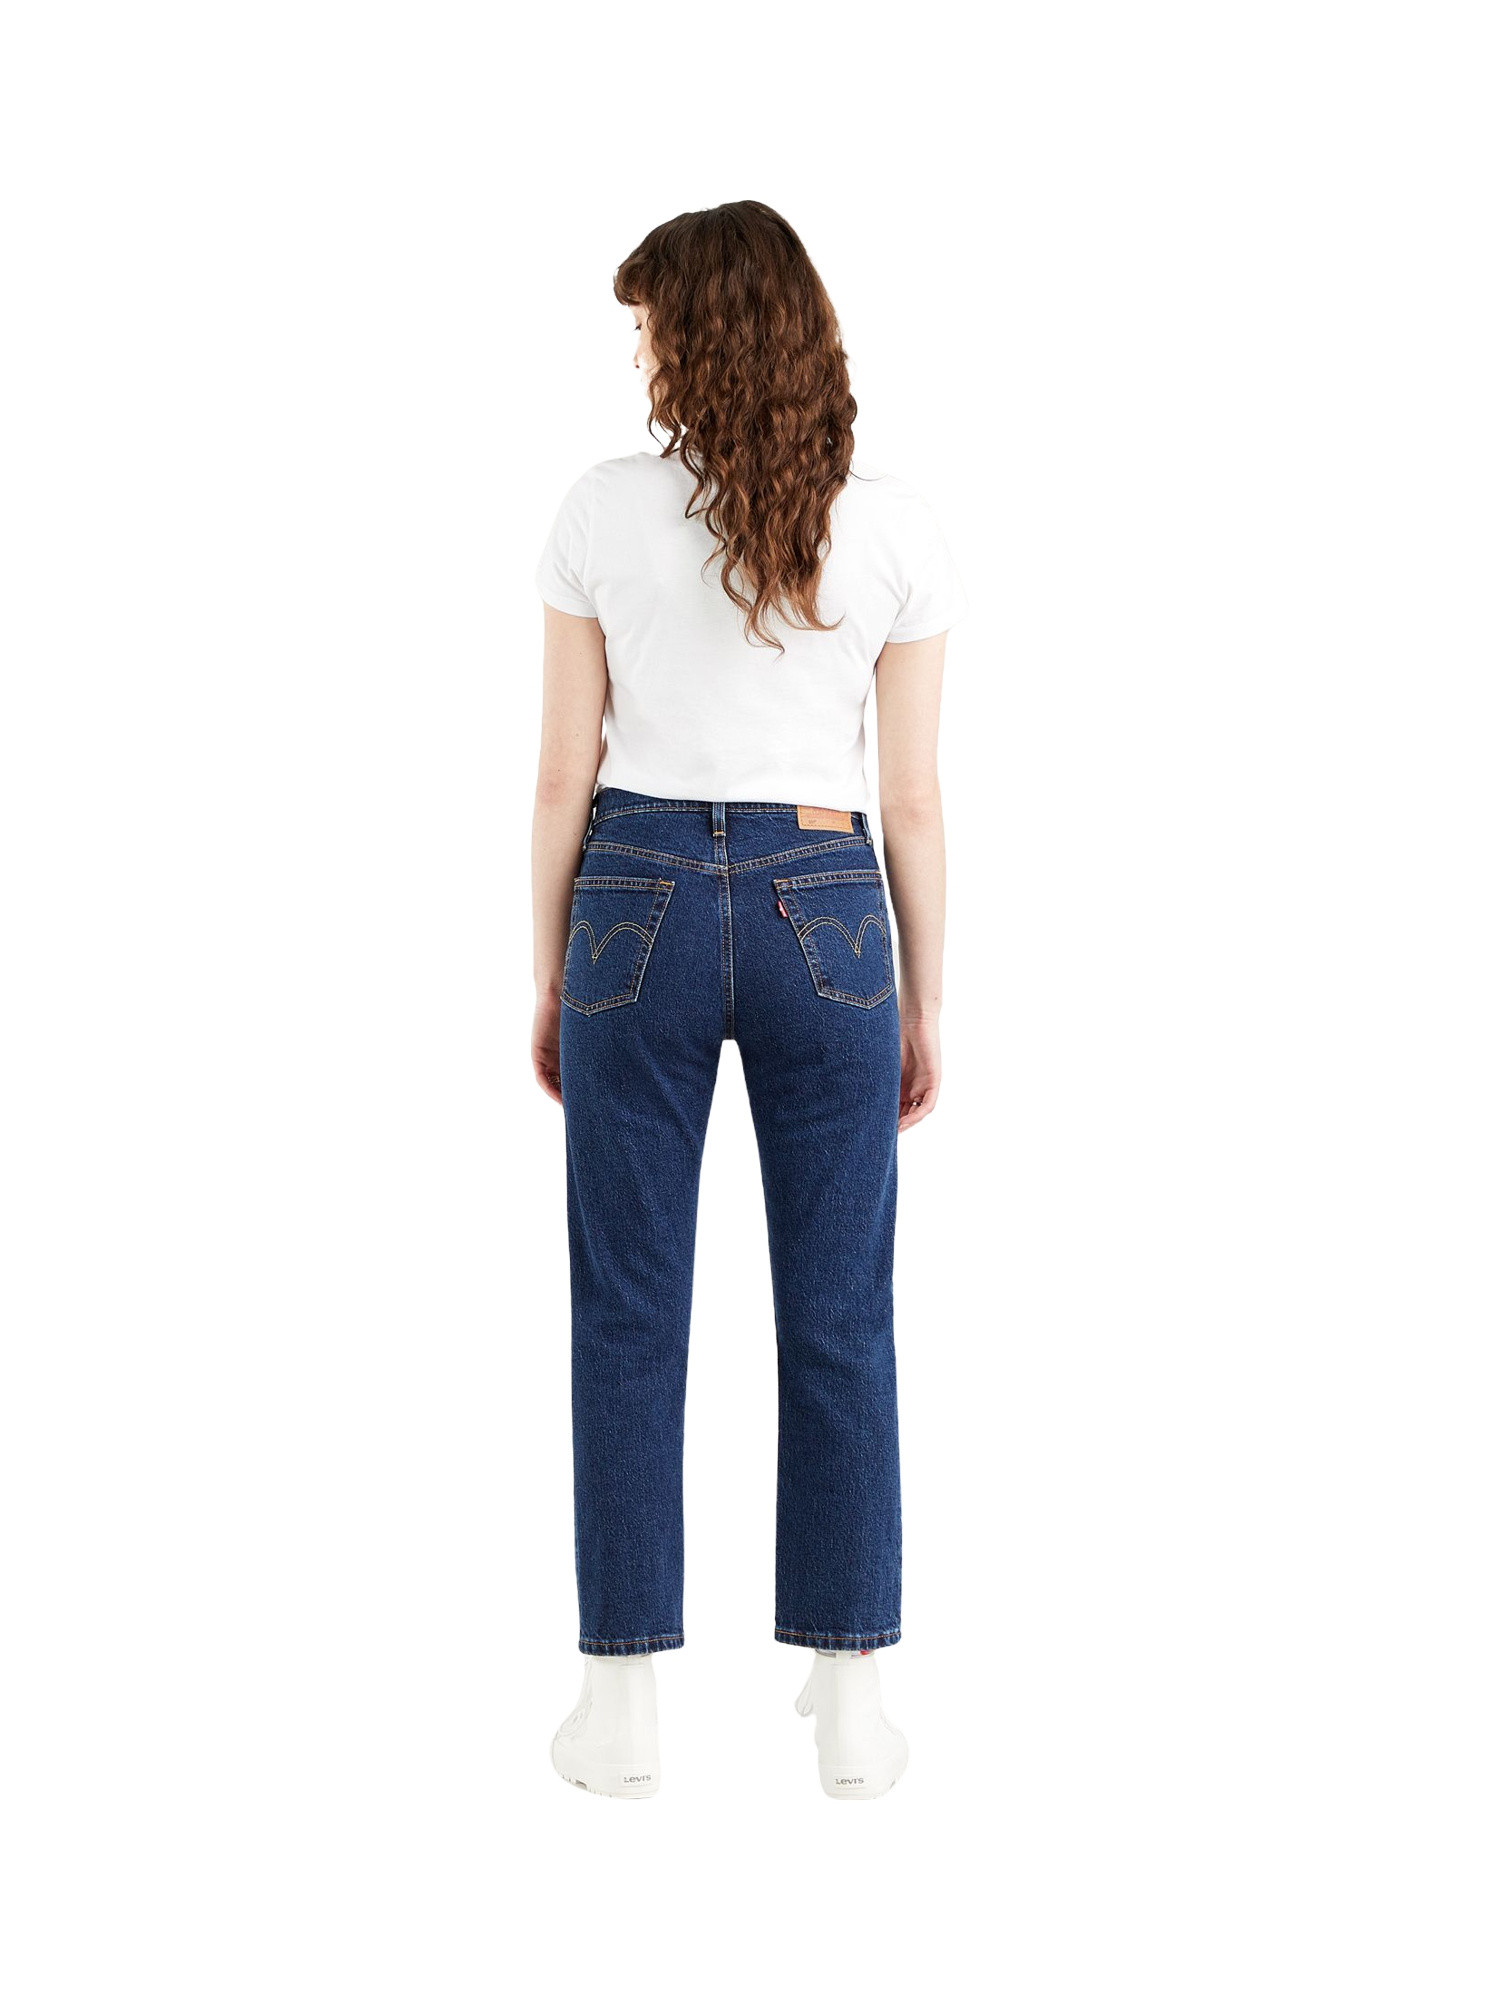 Levi's - jeans 501® original cropped, Denim, large image number 4